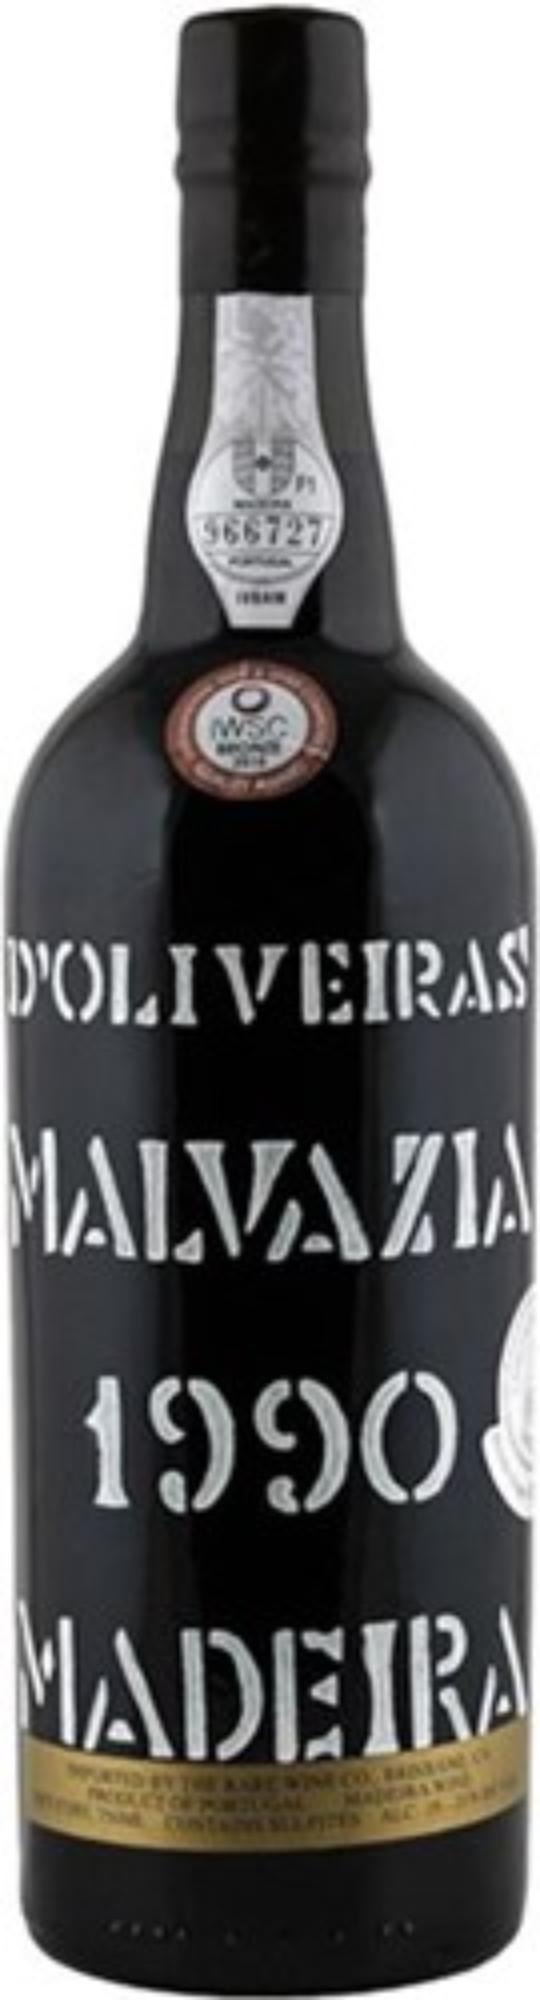 D'Oliveira Madeira Malvasia 1990